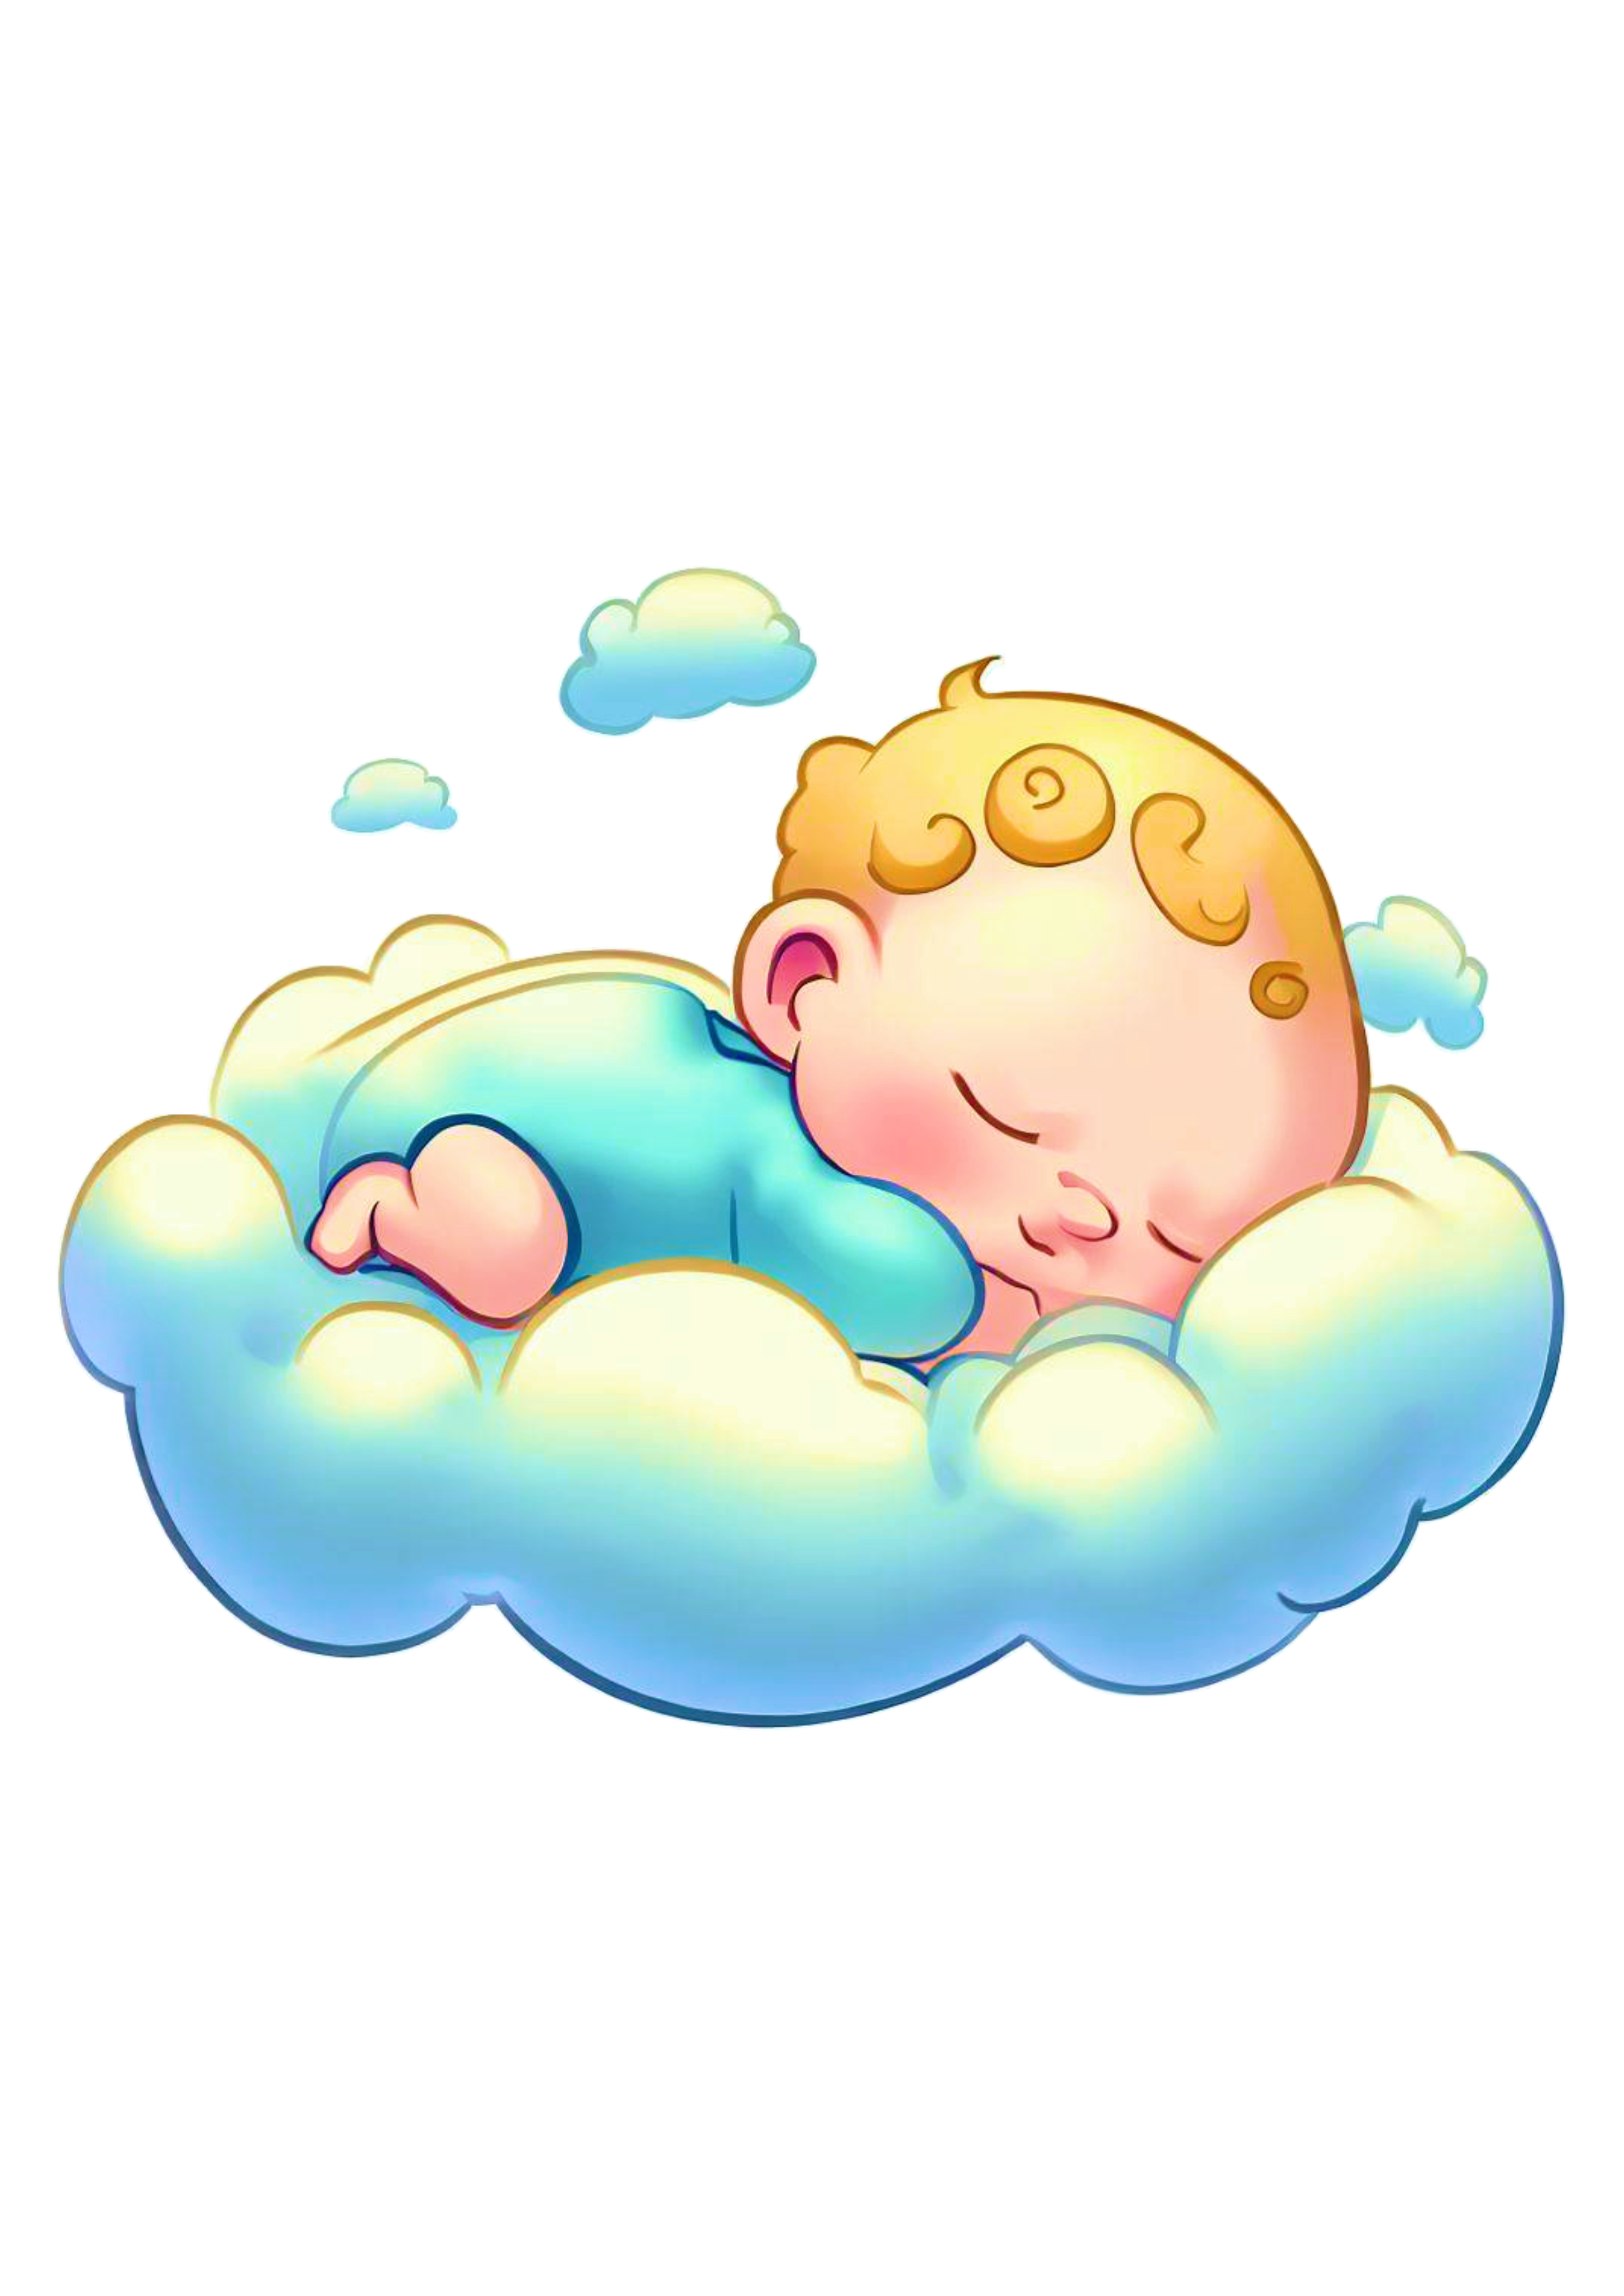 Bebê dormindo na nuvem roupinha azul fofinho cute baby imagem sem fundo png